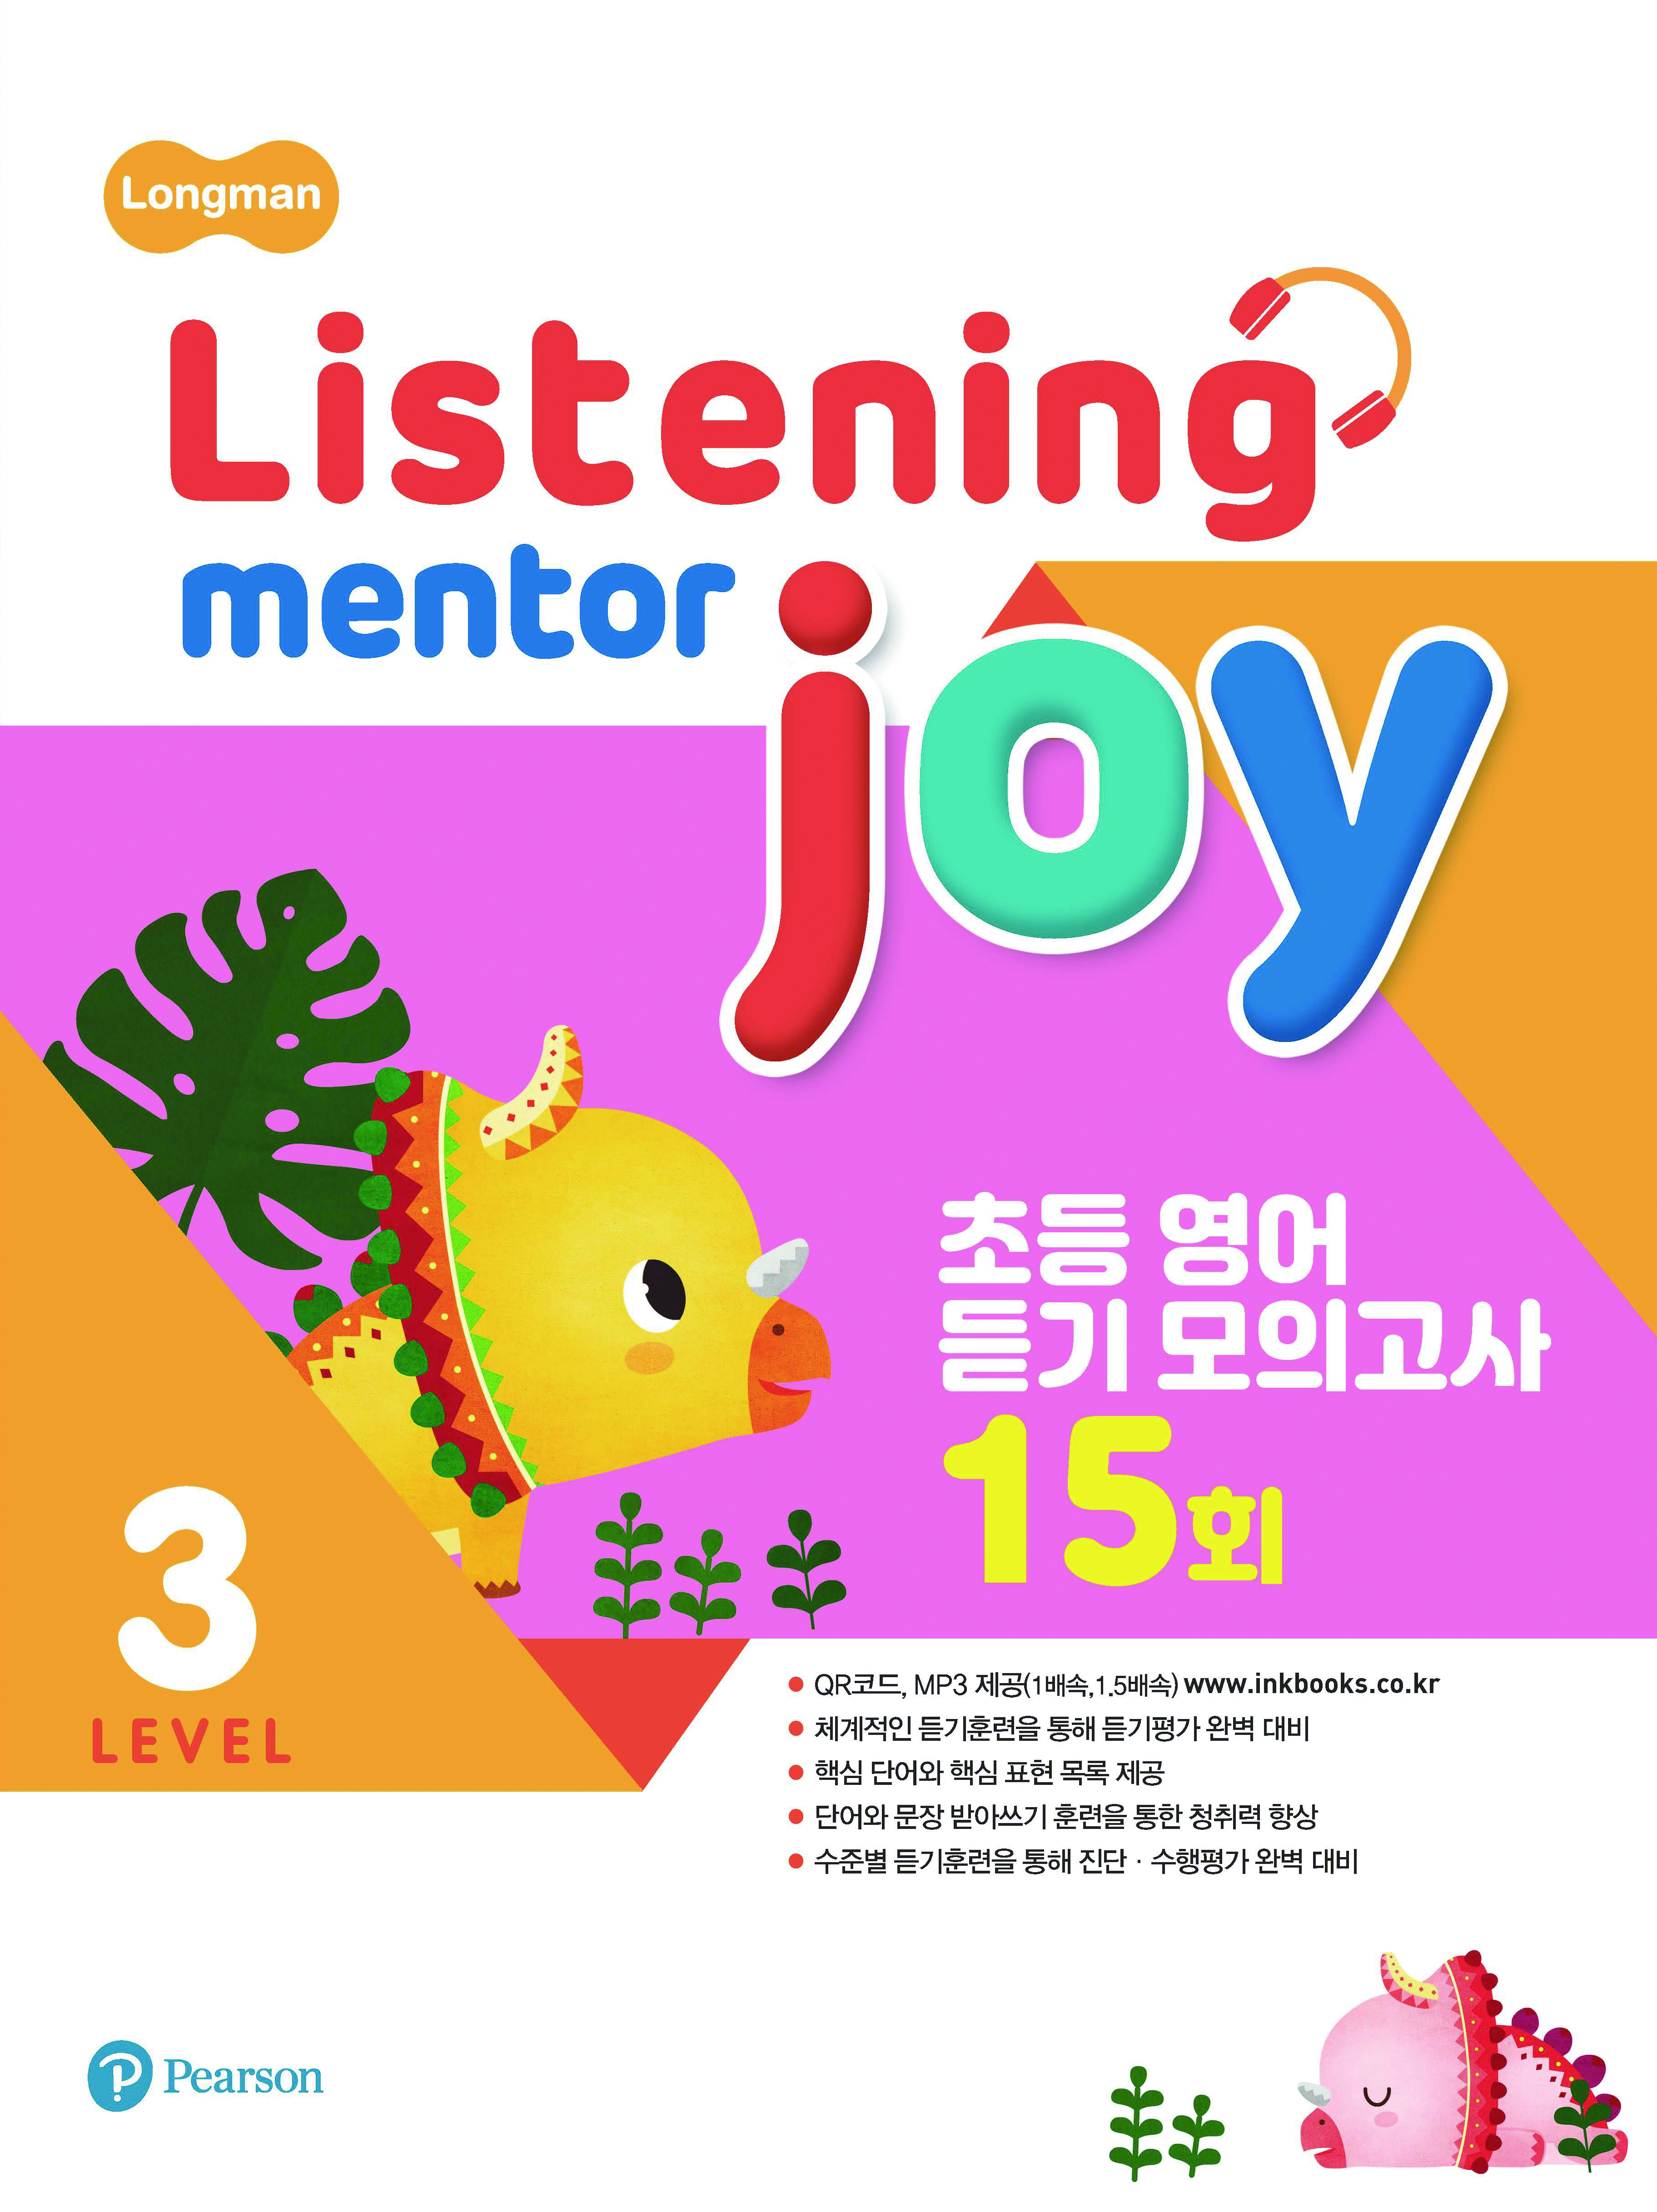 Listening Mentor Joy 3